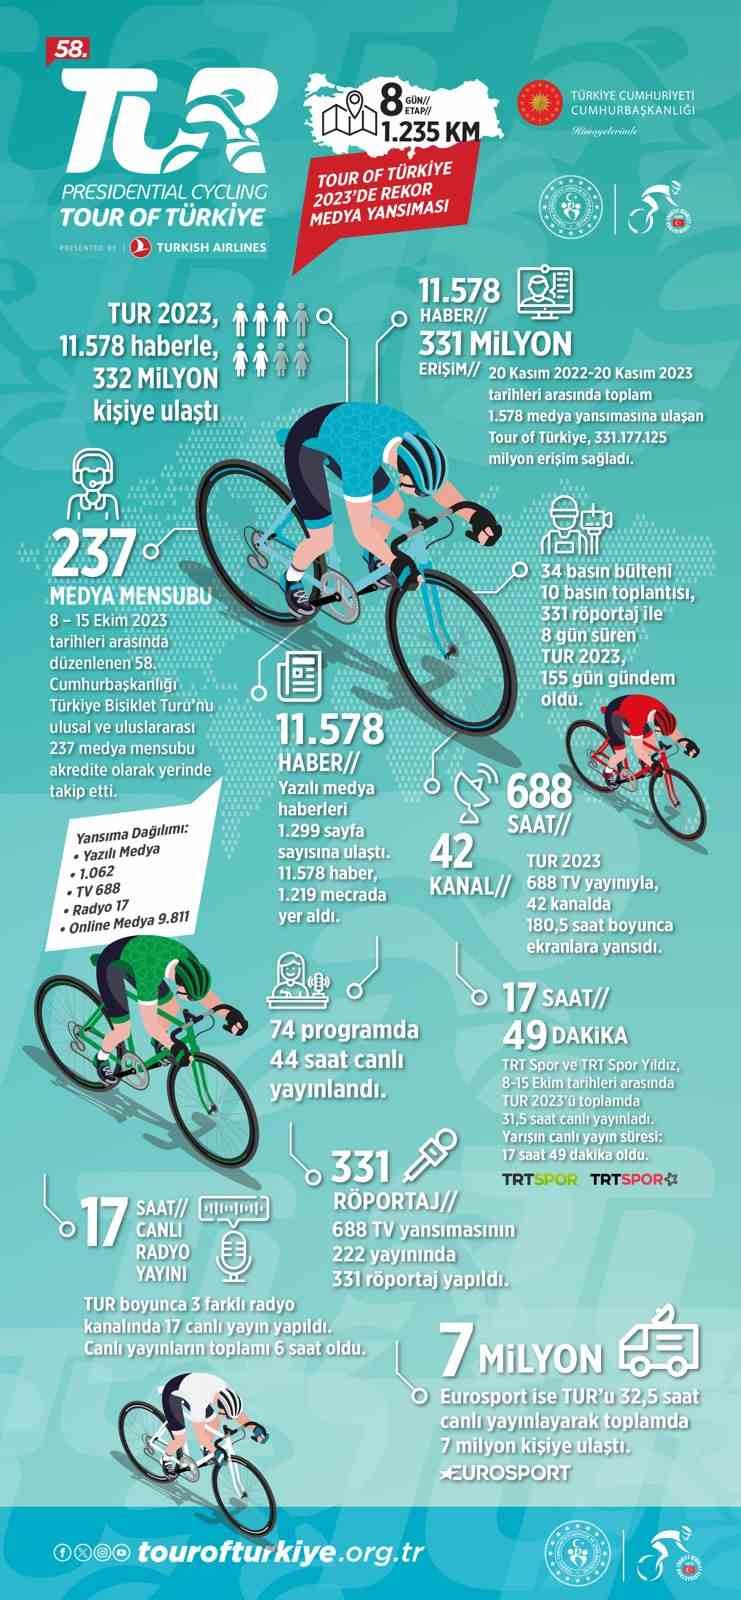 58. Cumhurbaşkanlığı Türkiye Bisiklet Turu, tüm dünyada izlendi
